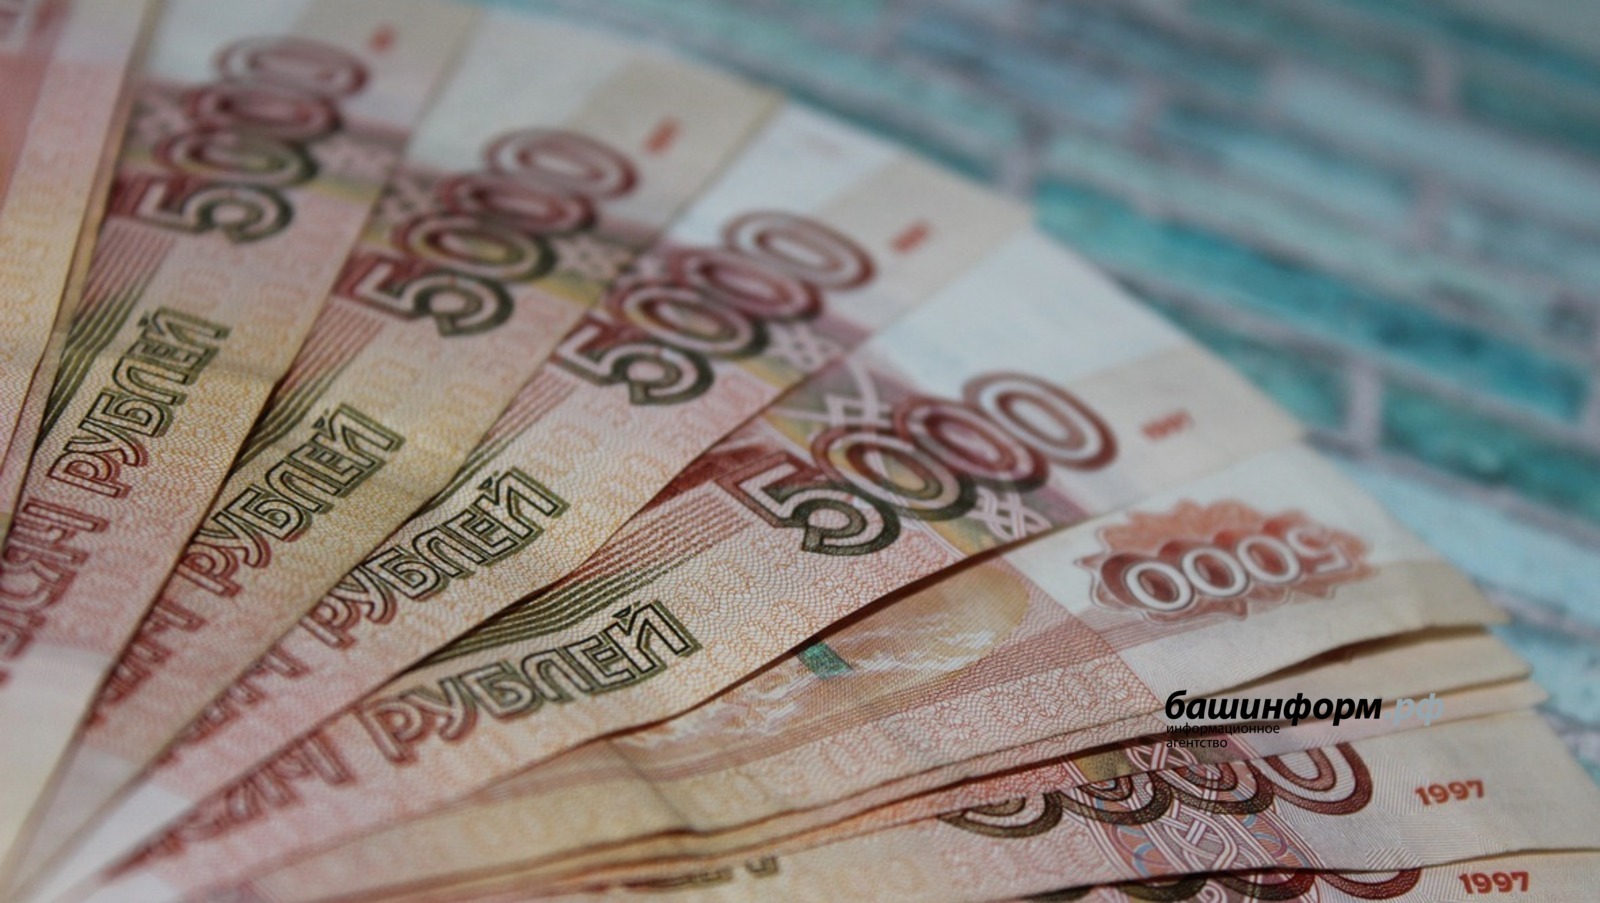 Глава Башкирии увеличил финансирование инициативных проектов школьников до 70 млн рублей